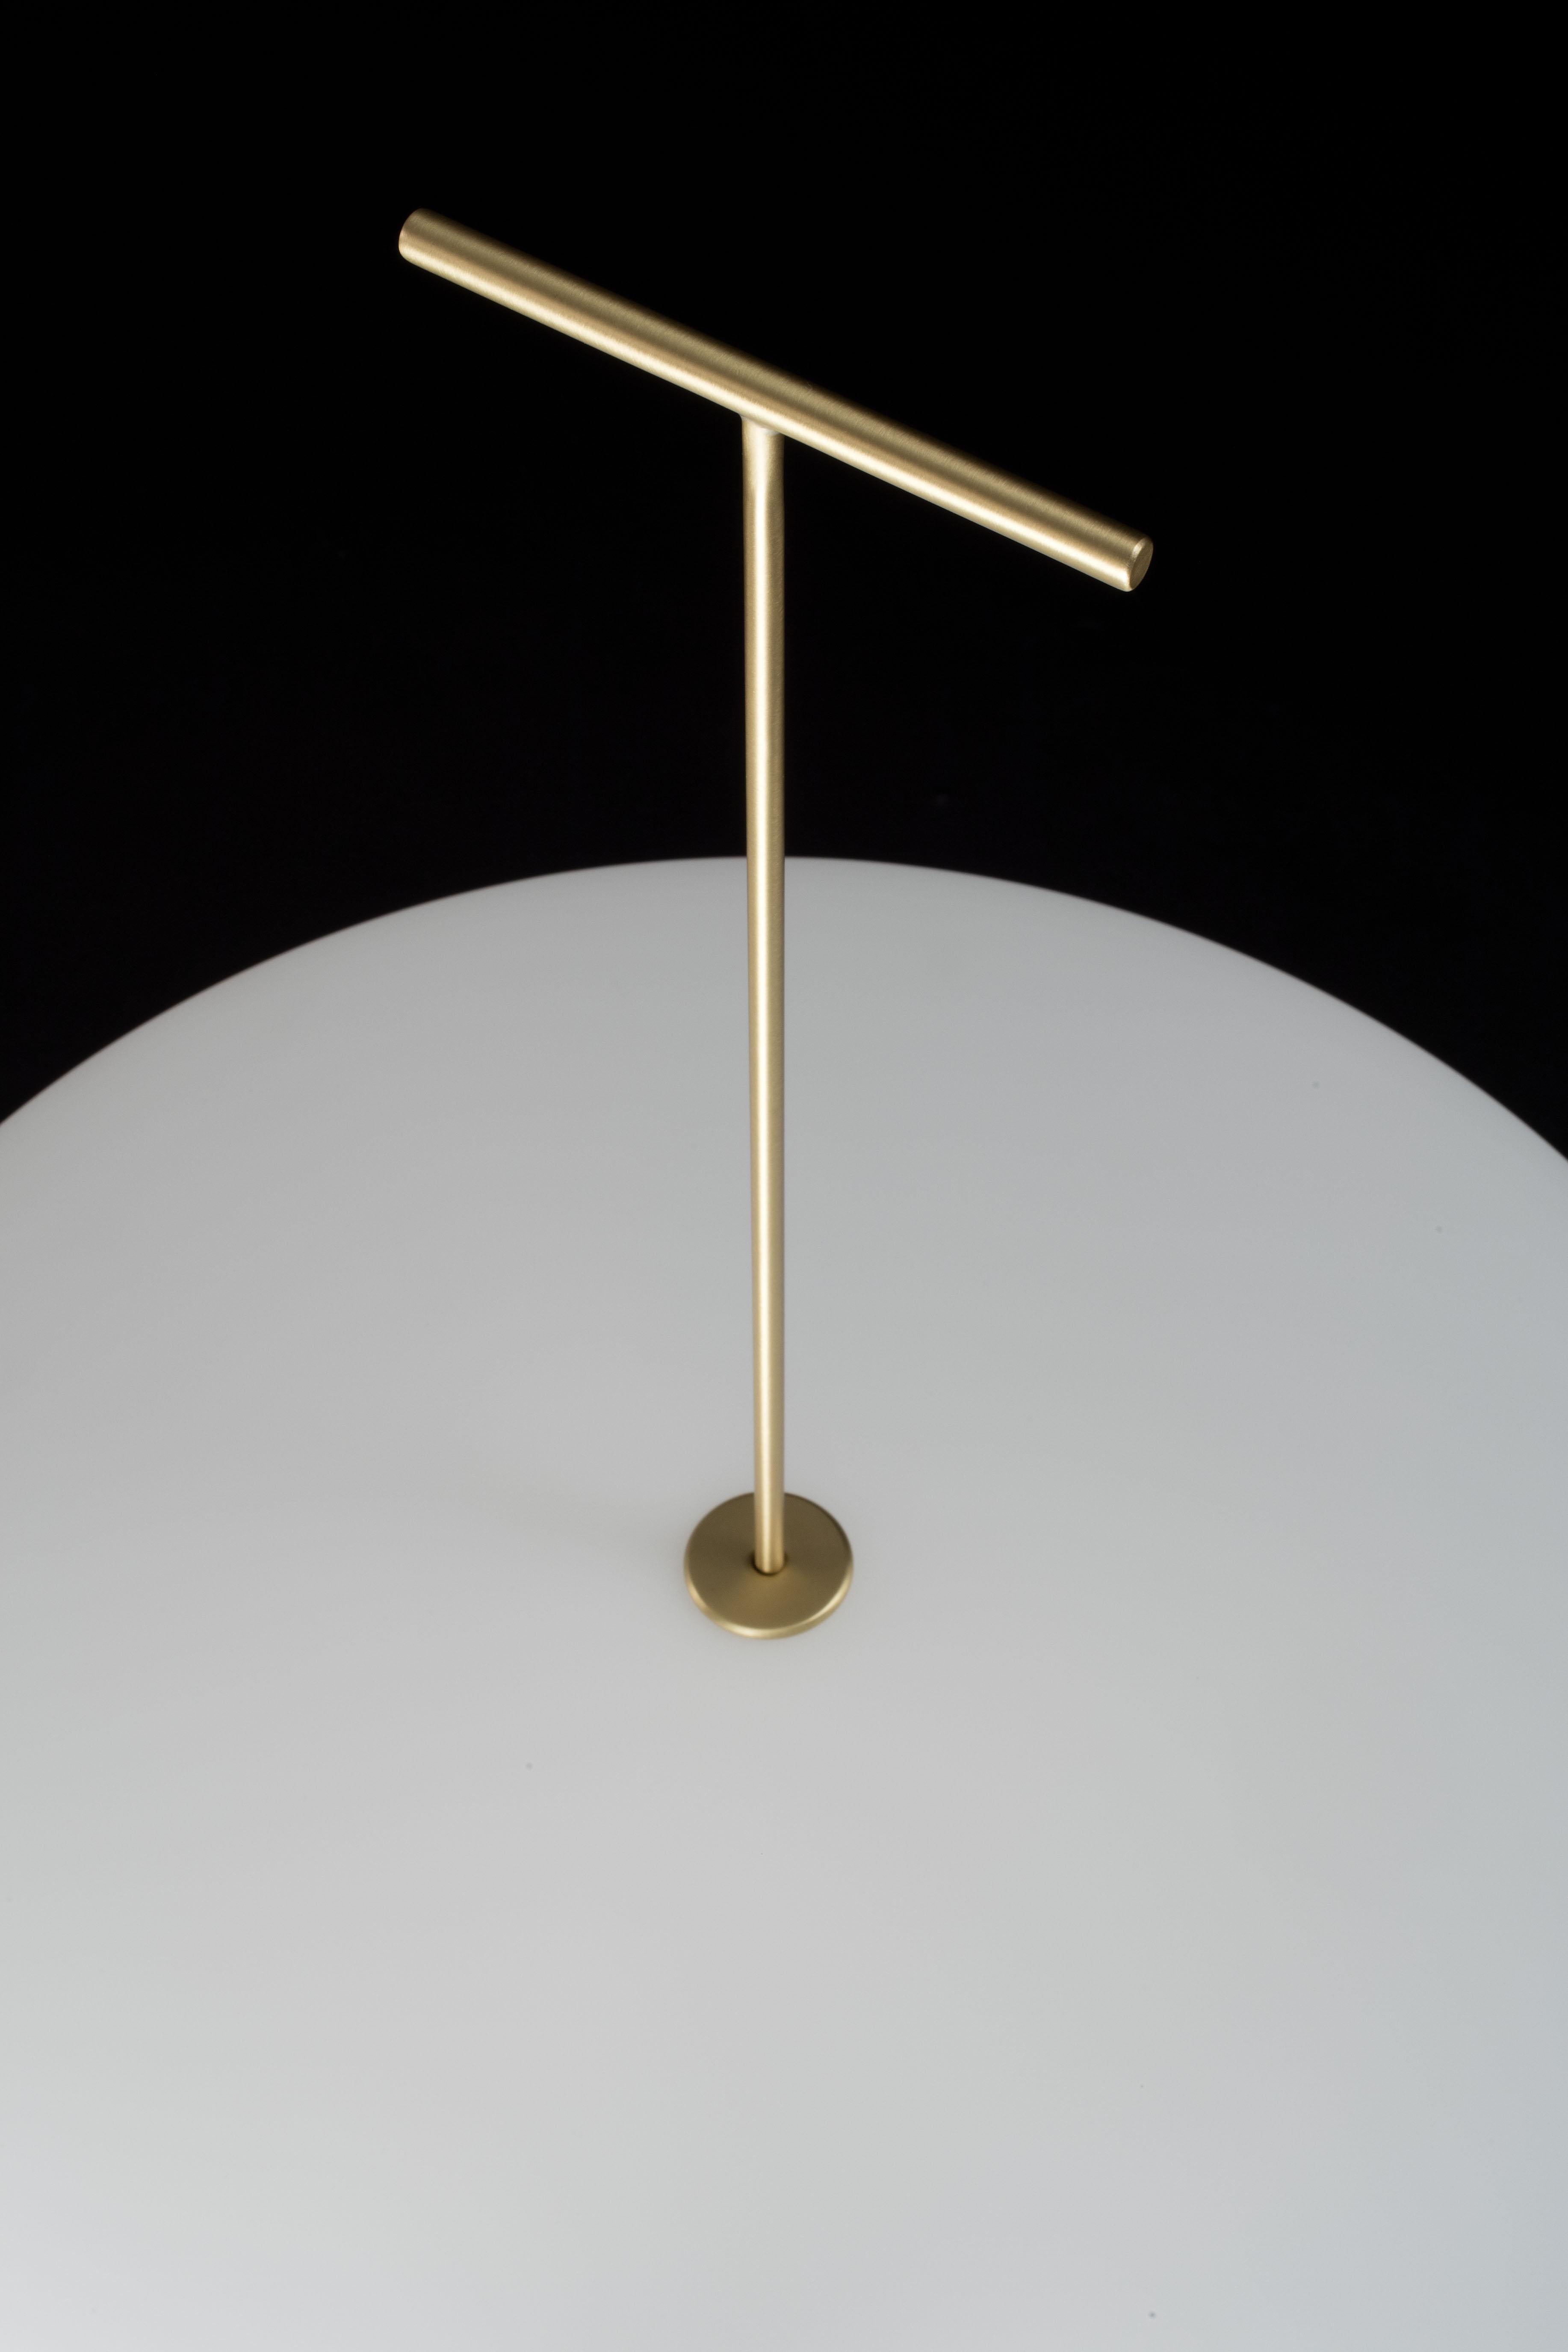 Contemporary Gio Ponti Luna Orizzontale Floor Lamp in Satin Nickel for Tato Italia For Sale